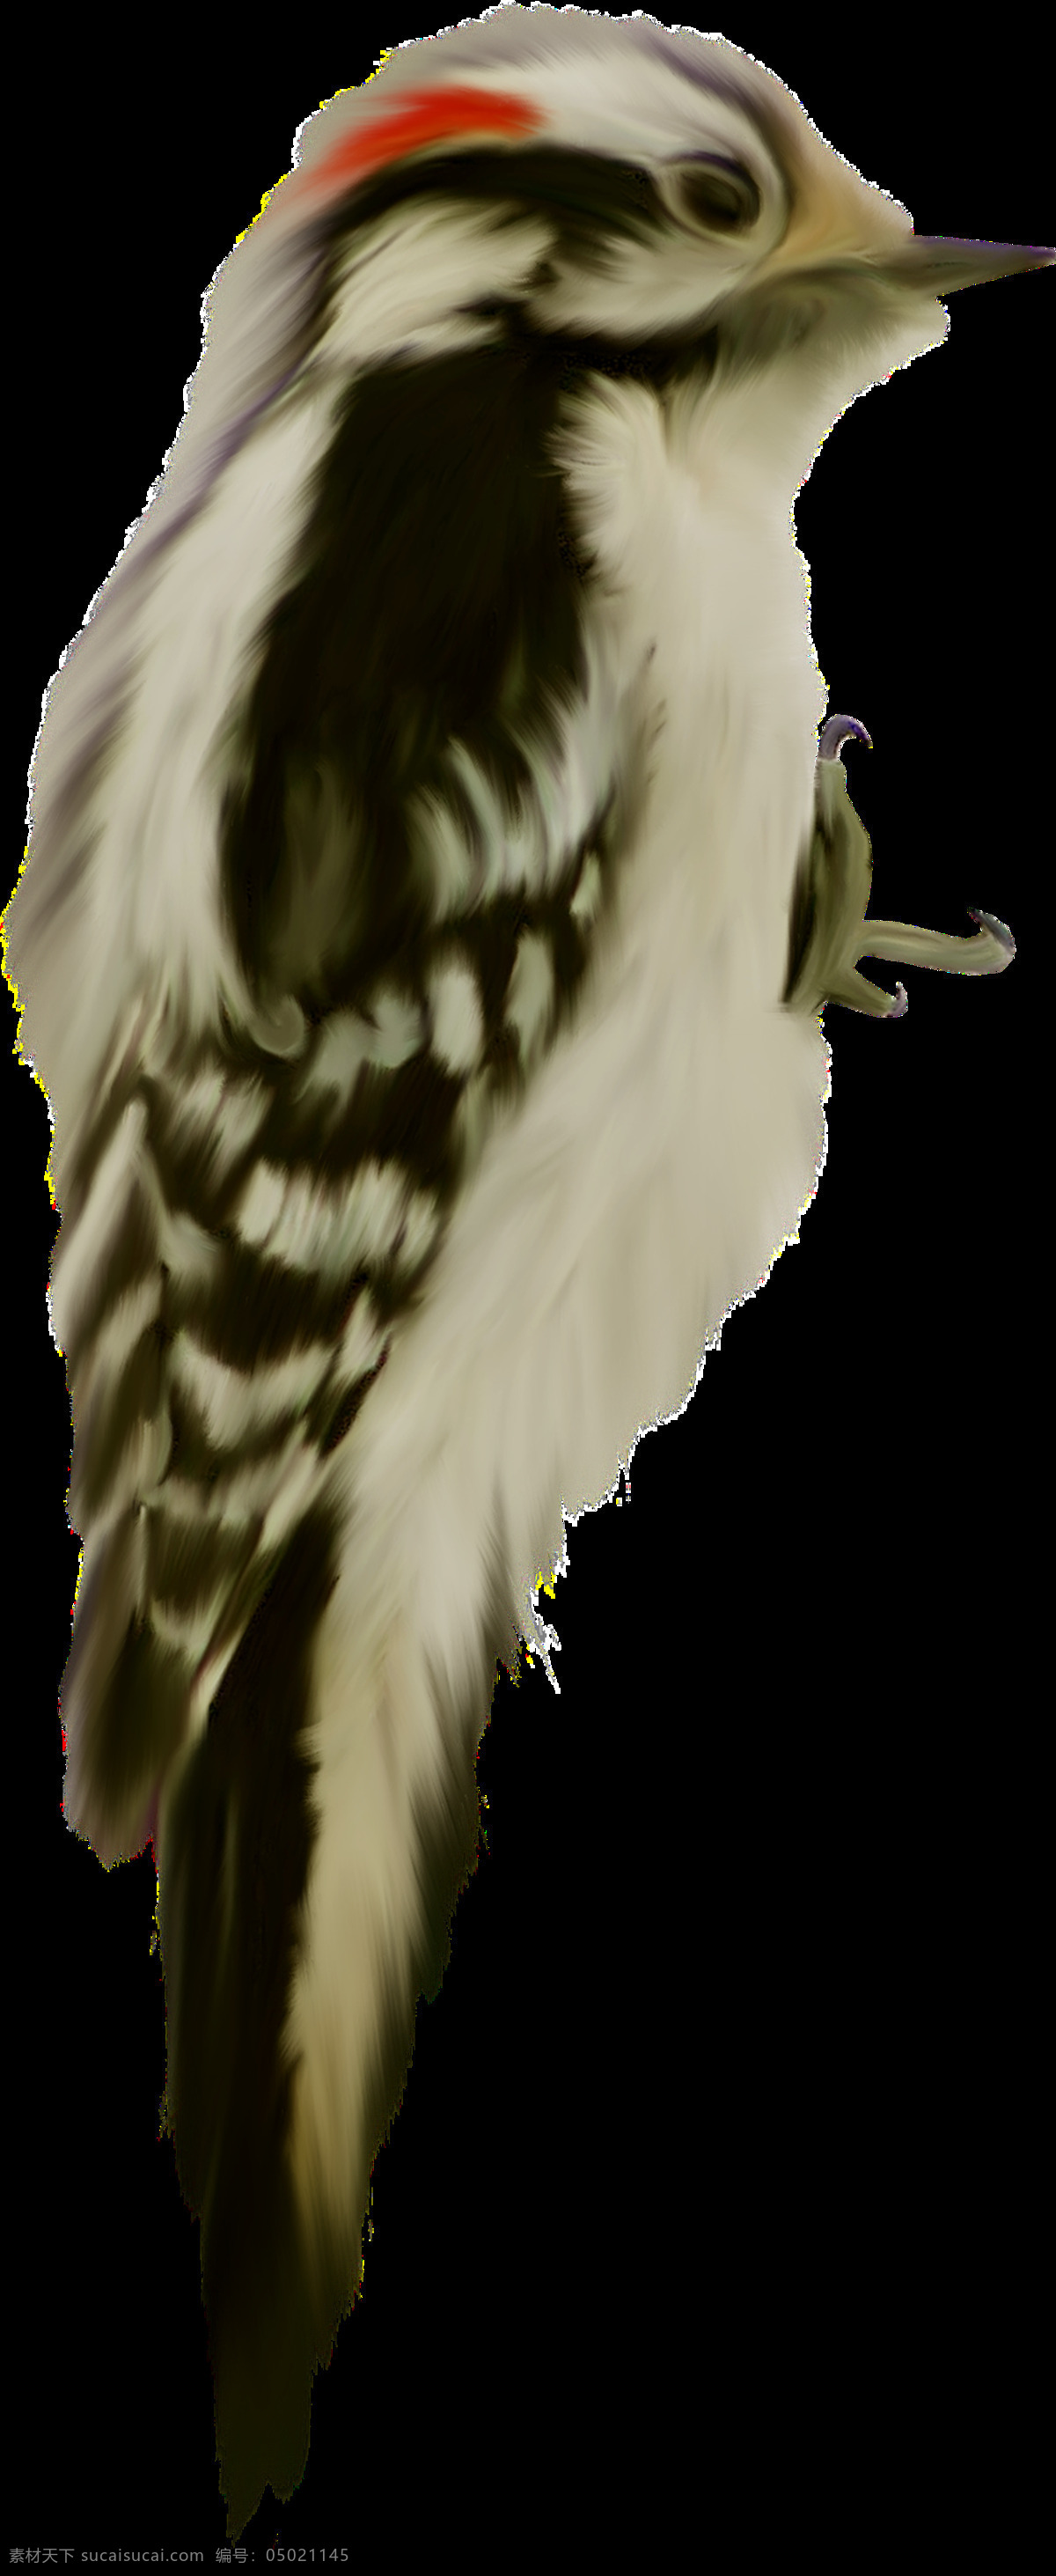 啄木鸟图片 啄木鸟 森林医生 橡树啄木鸟 大斑啄木鸟 png图 透明图 免扣图 透明背景 透明底 抠图 生物世界 鸟类